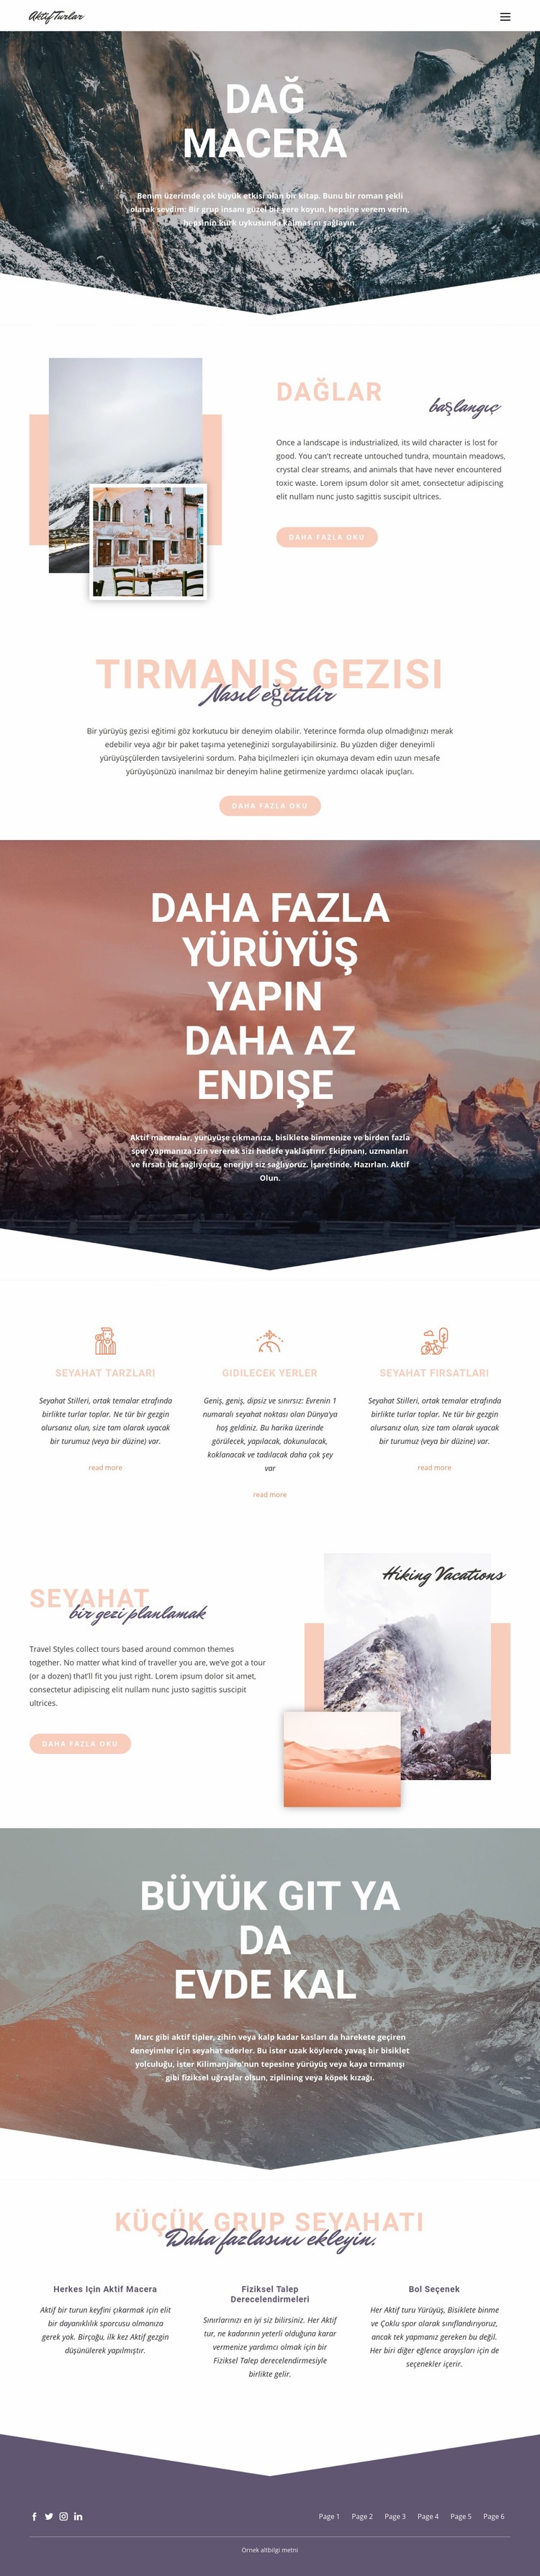 Dağ Macerası Web sitesi tasarımı